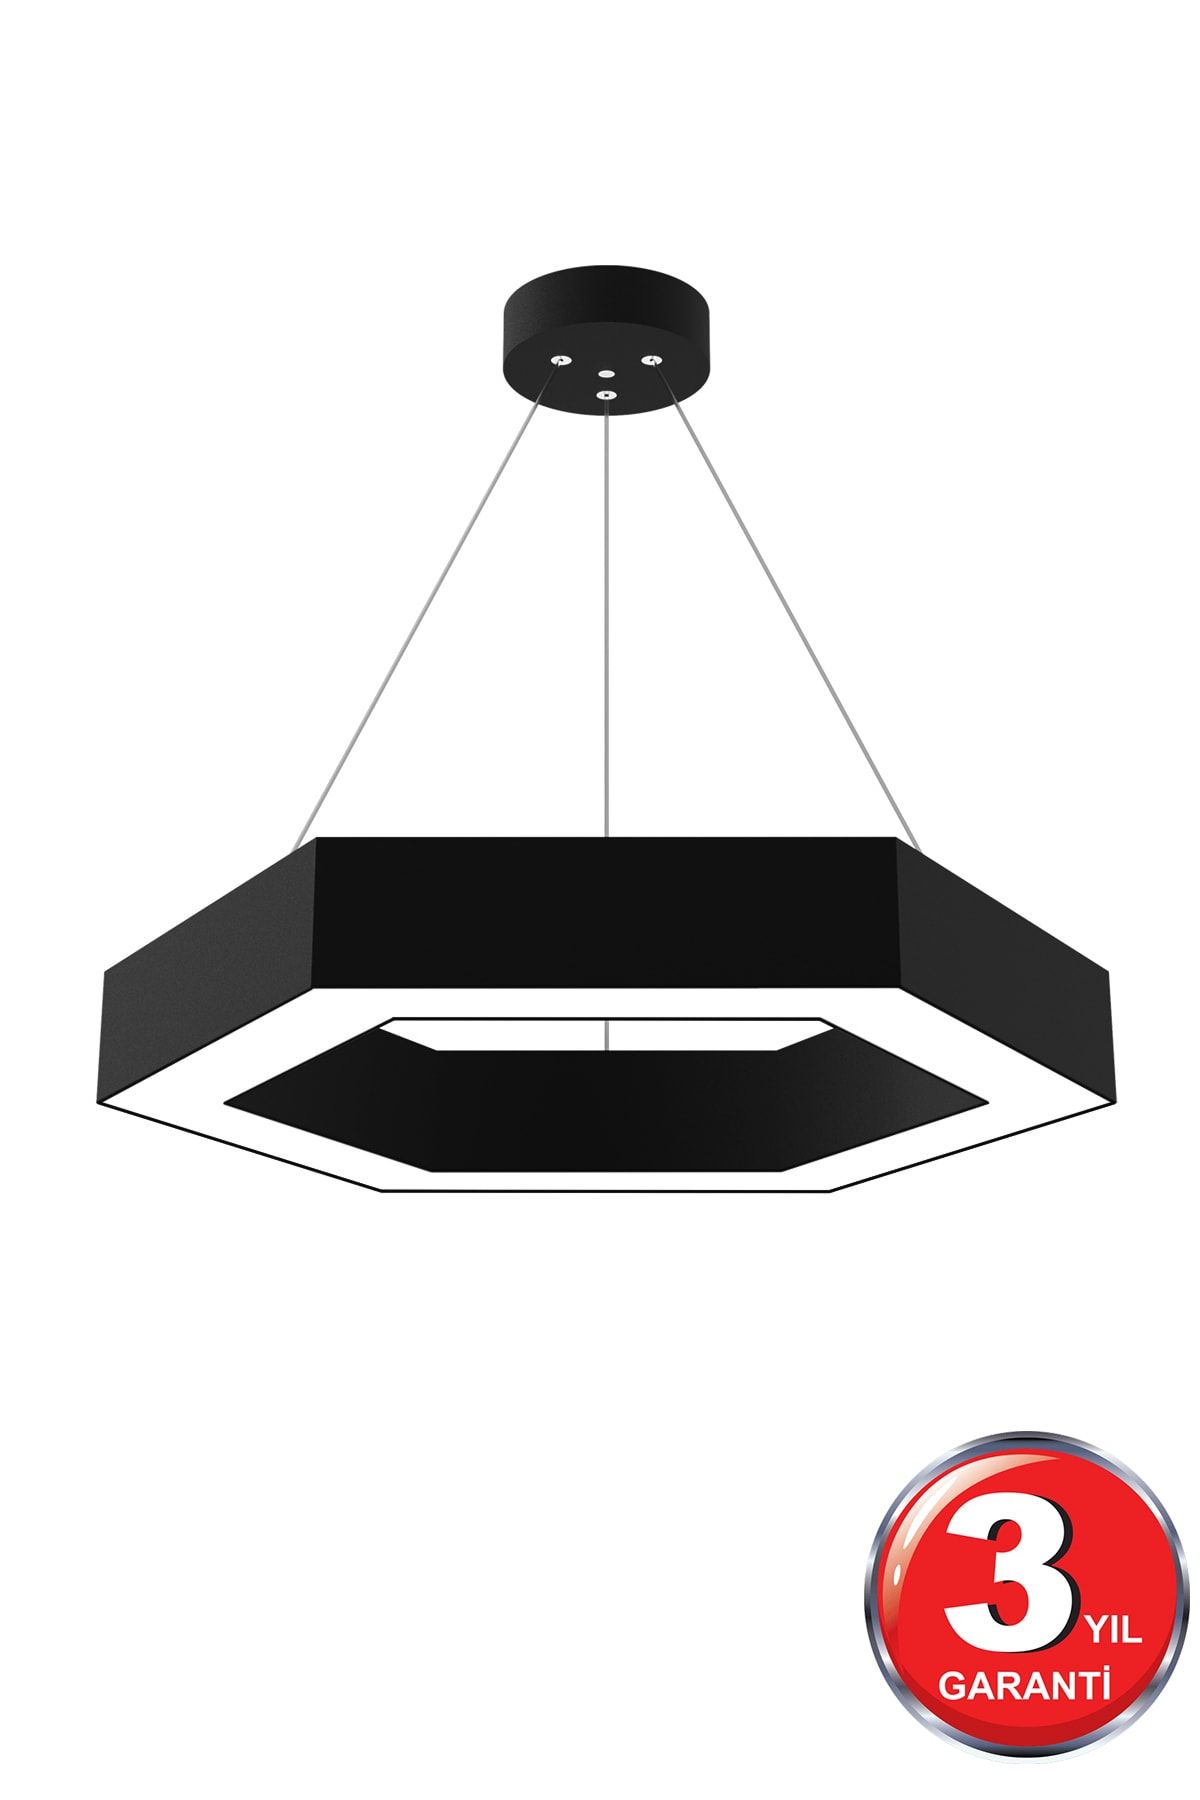 Hegza Lighting Hexagon ( Siyah Kasa, Beyaz Işık ) Ledli Modern Led Avize, Salon, Mutfak, Oturma Yatak Odası, Sarkıt